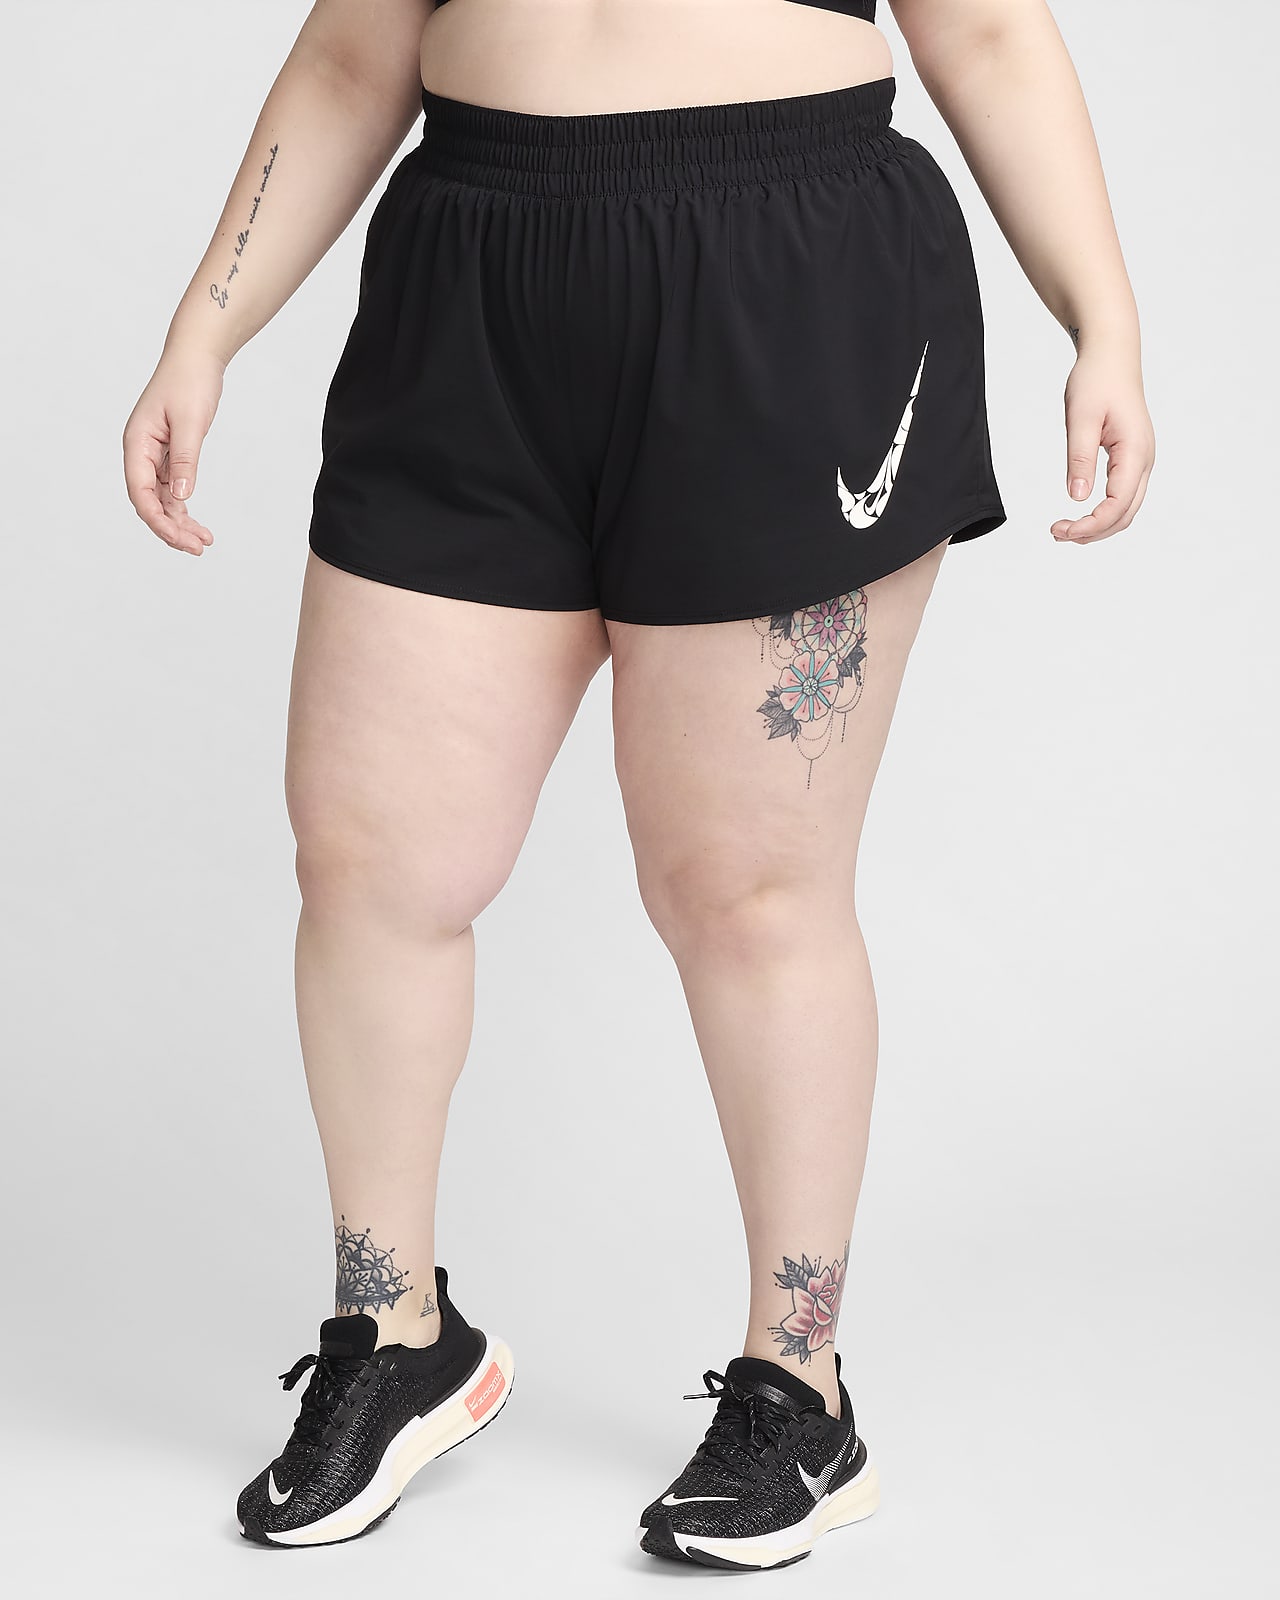 Γυναικείο σορτς Dri-FIT μεσαίου καβάλου για τρέξιμο με επένδυση εσωτερικού σλιπ Nike One Swoosh (μεγάλα μεγέθη)